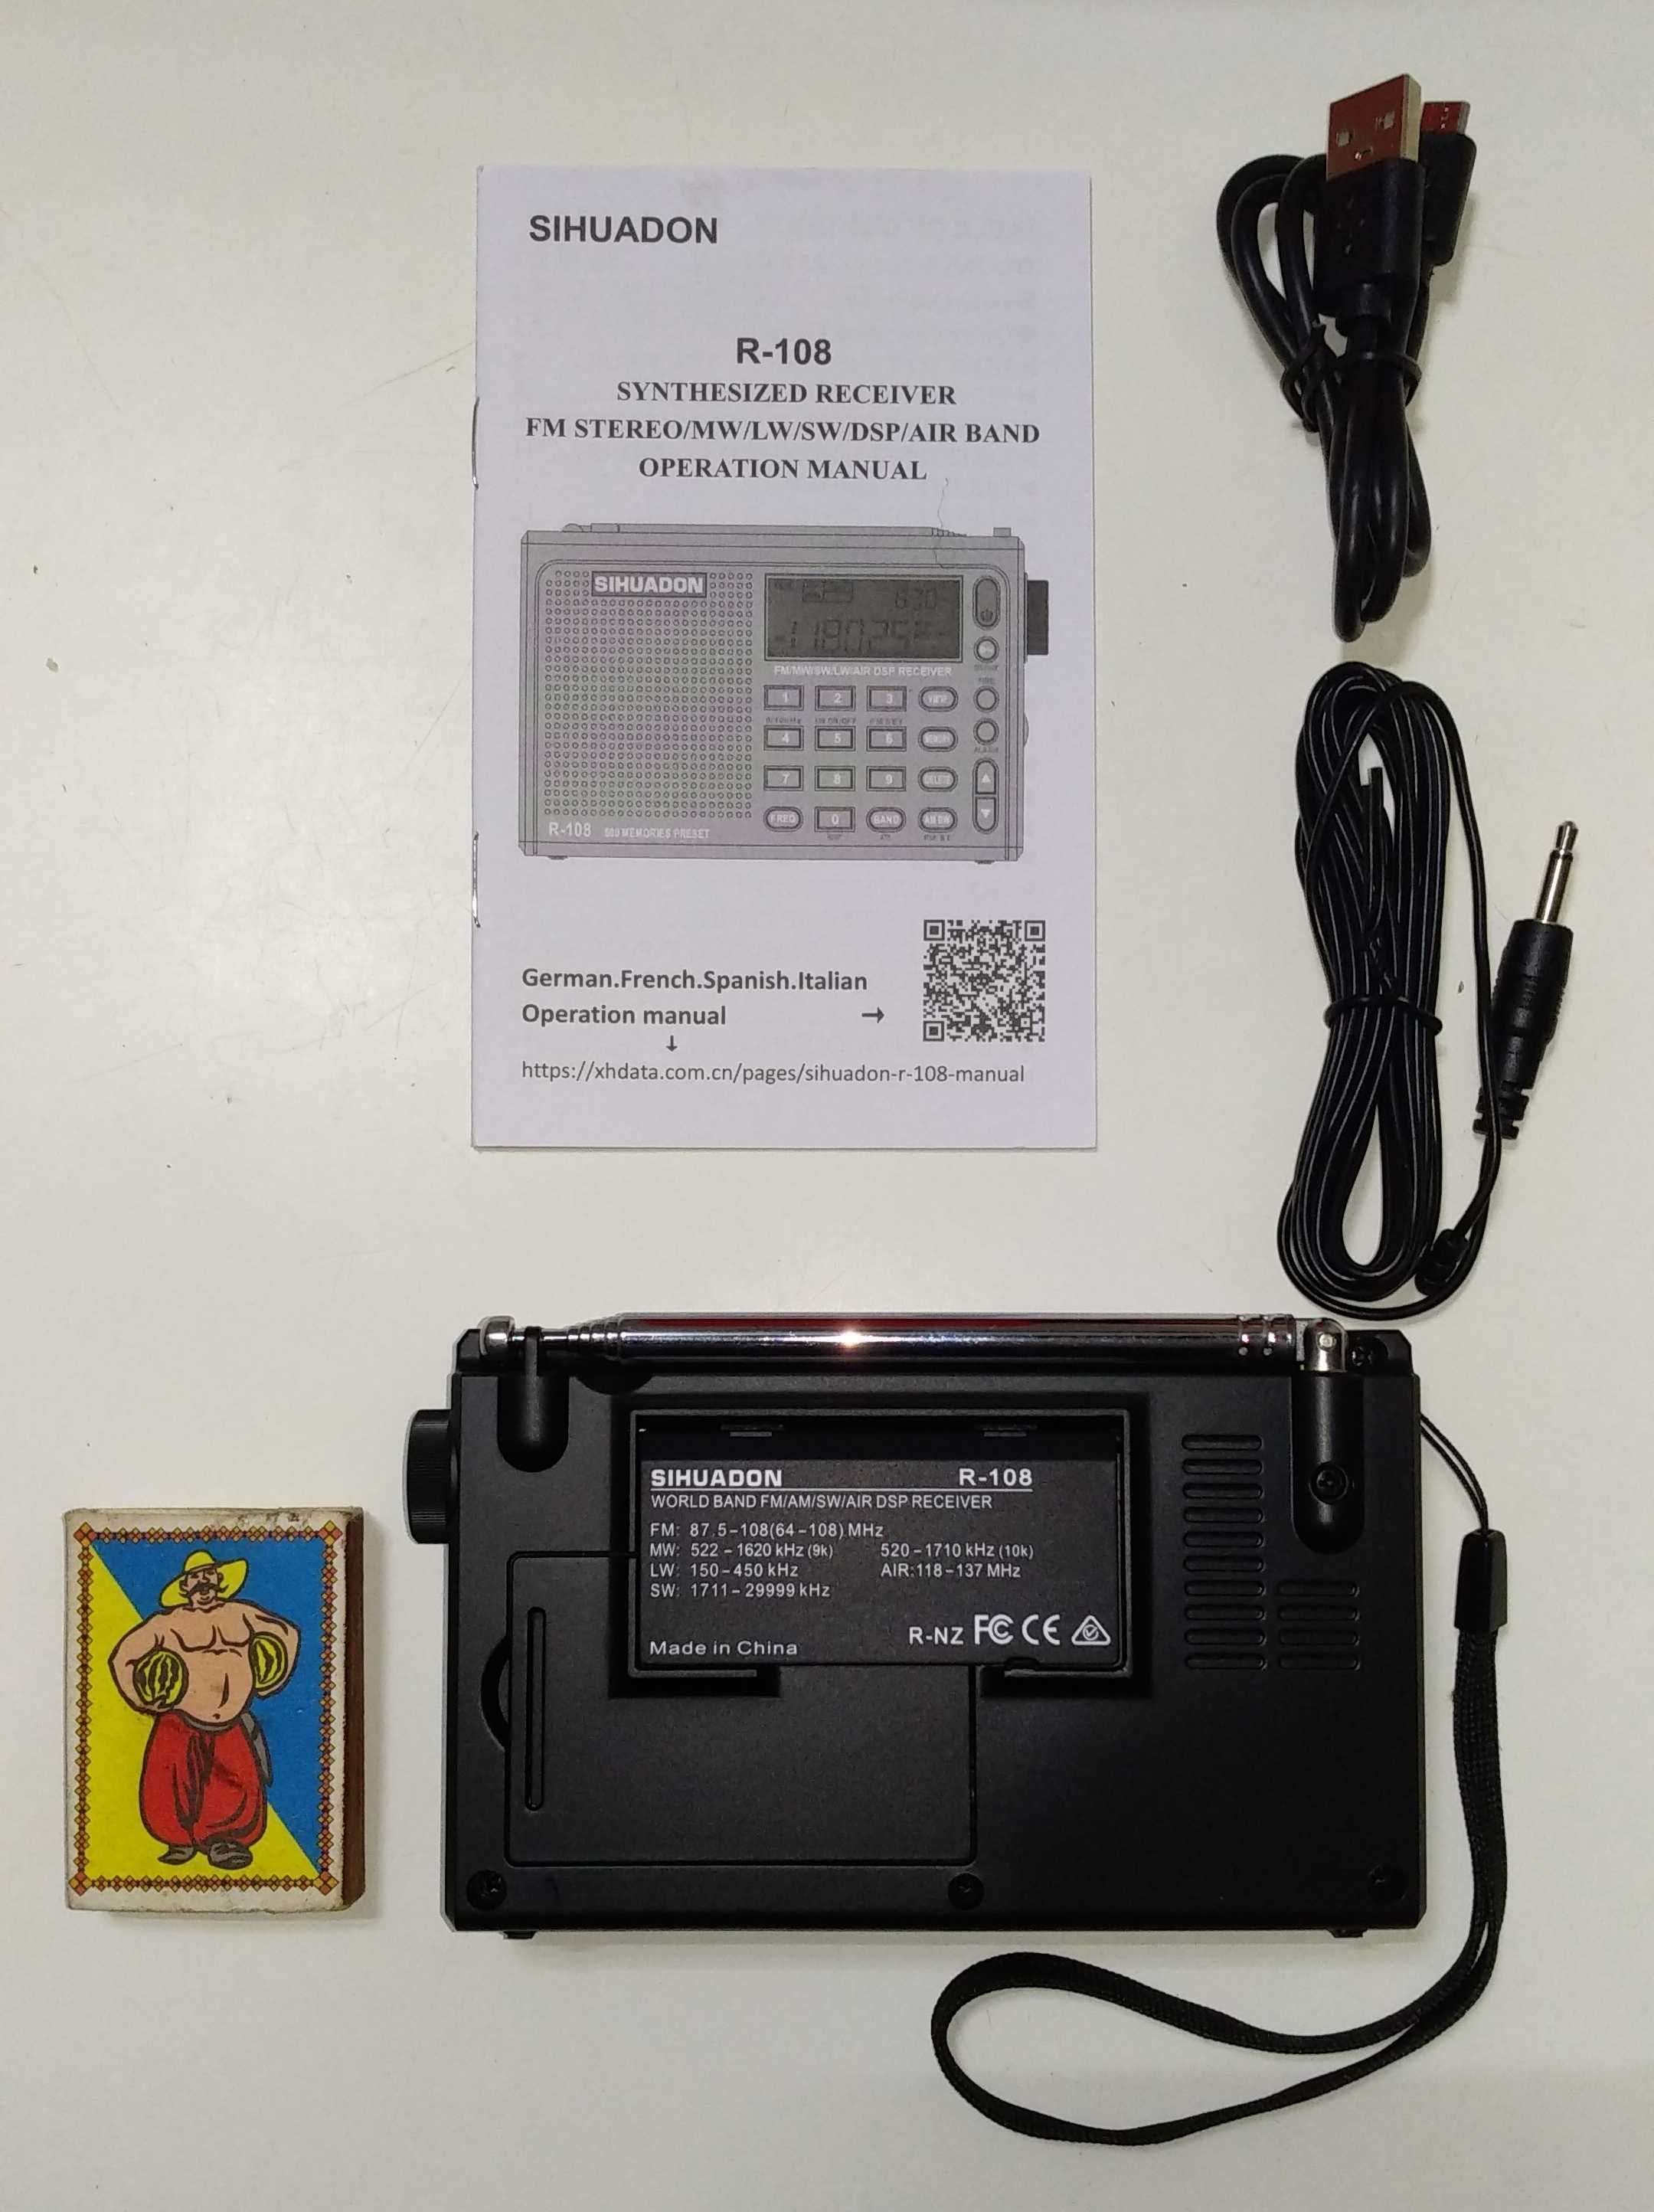 Радиоприёмник цифровой всеволновый компактный R-108 Sihuadon